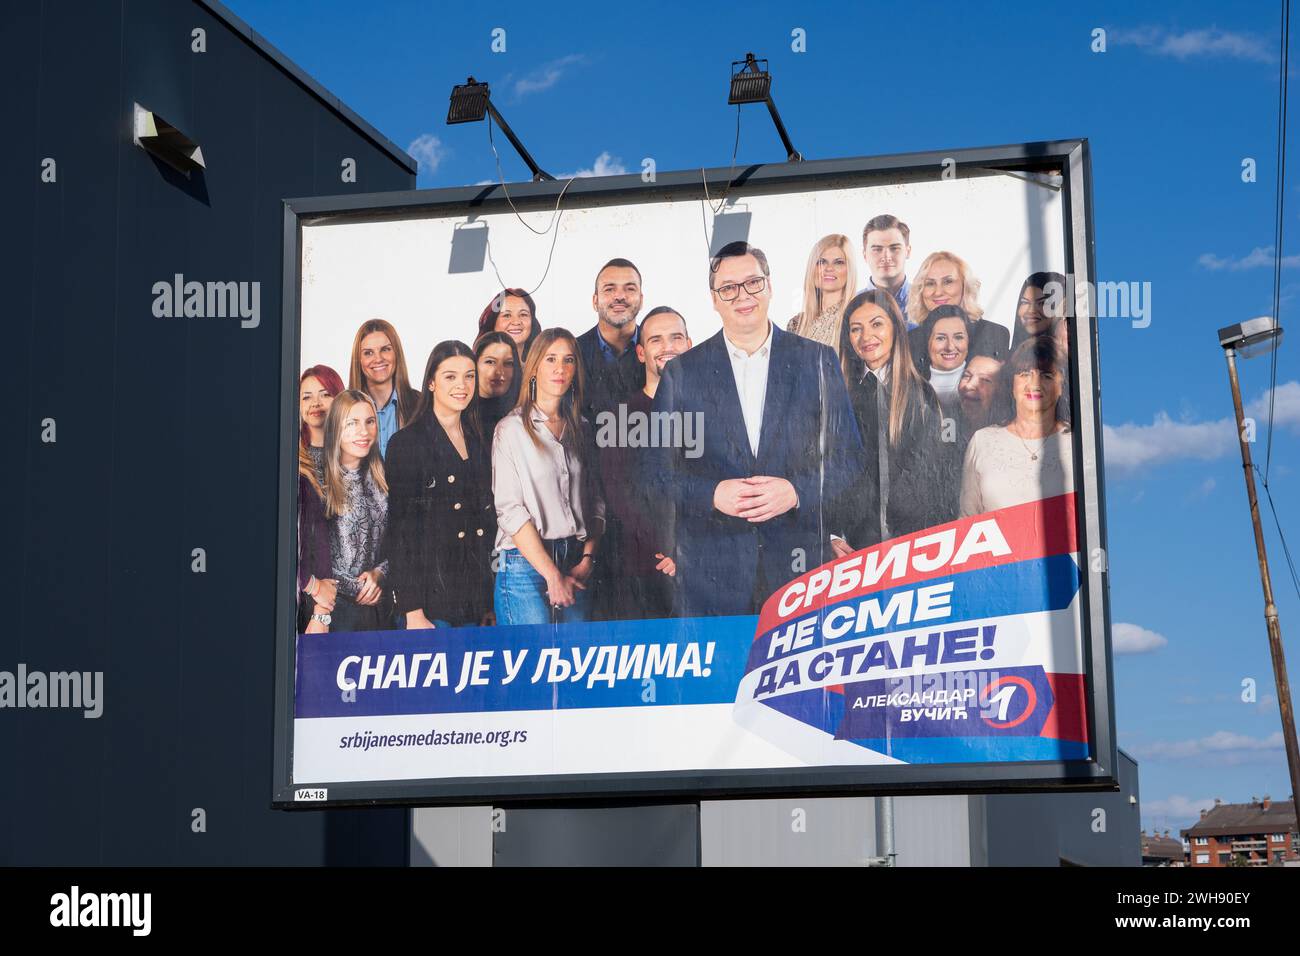 "La Serbie ne doit pas arrêter" - panneau d'affichage dans la campagne politique d'Aleksandar Vučić et du Parti progressiste serbe pour l'élection parlementaire contestée Banque D'Images